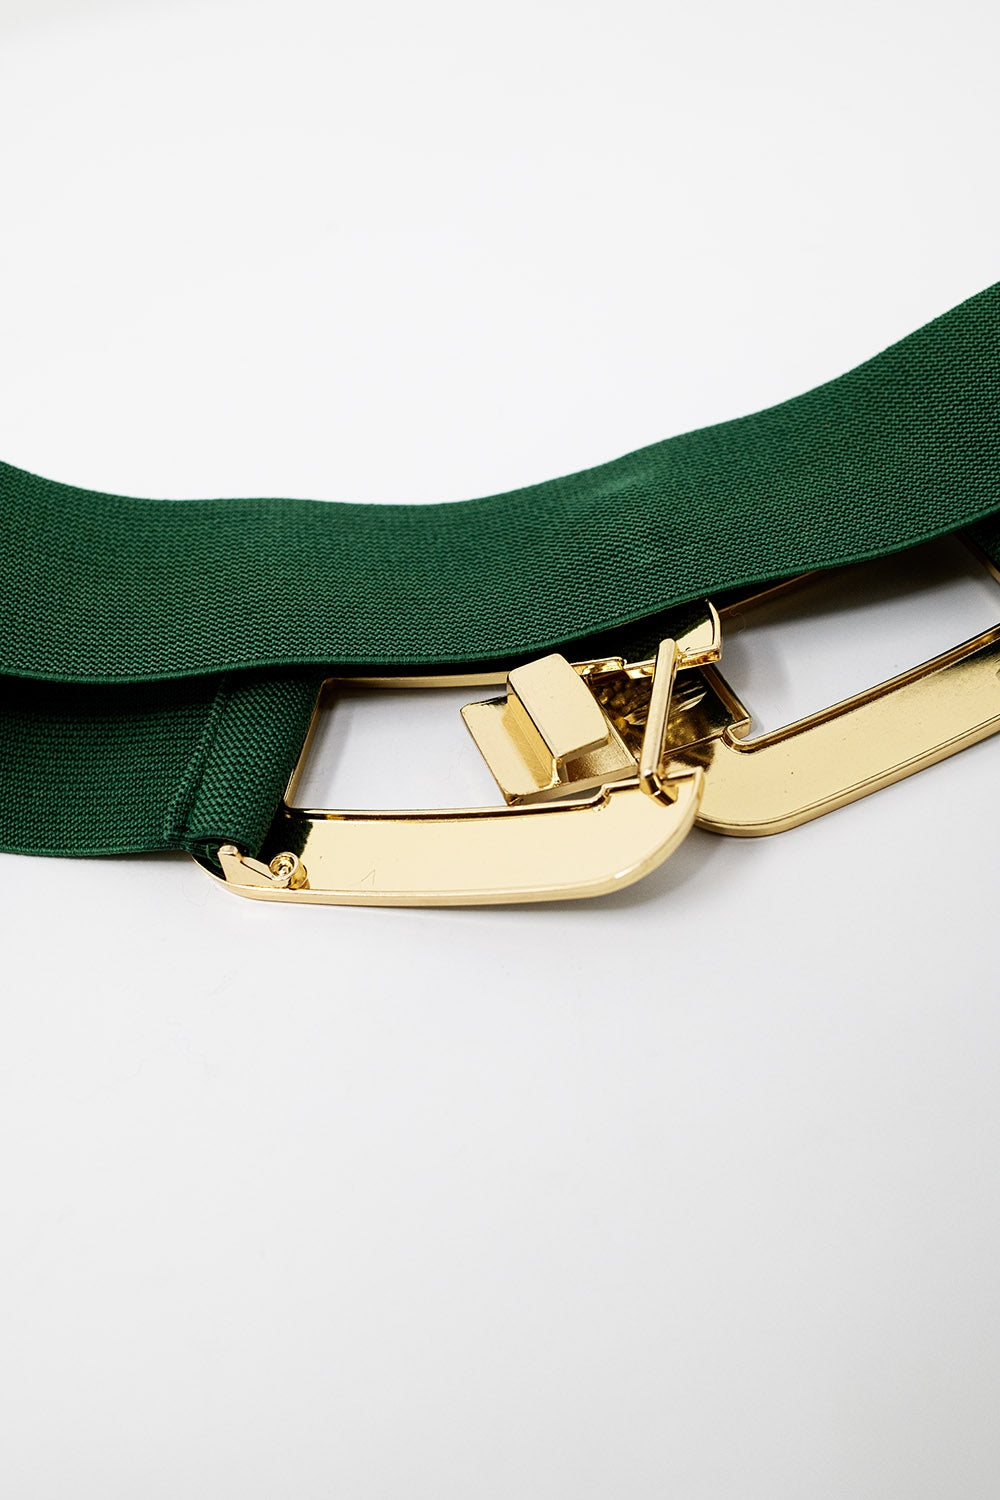 Cintura elastica verde con doppia fibbia ovale con incastonature di strass